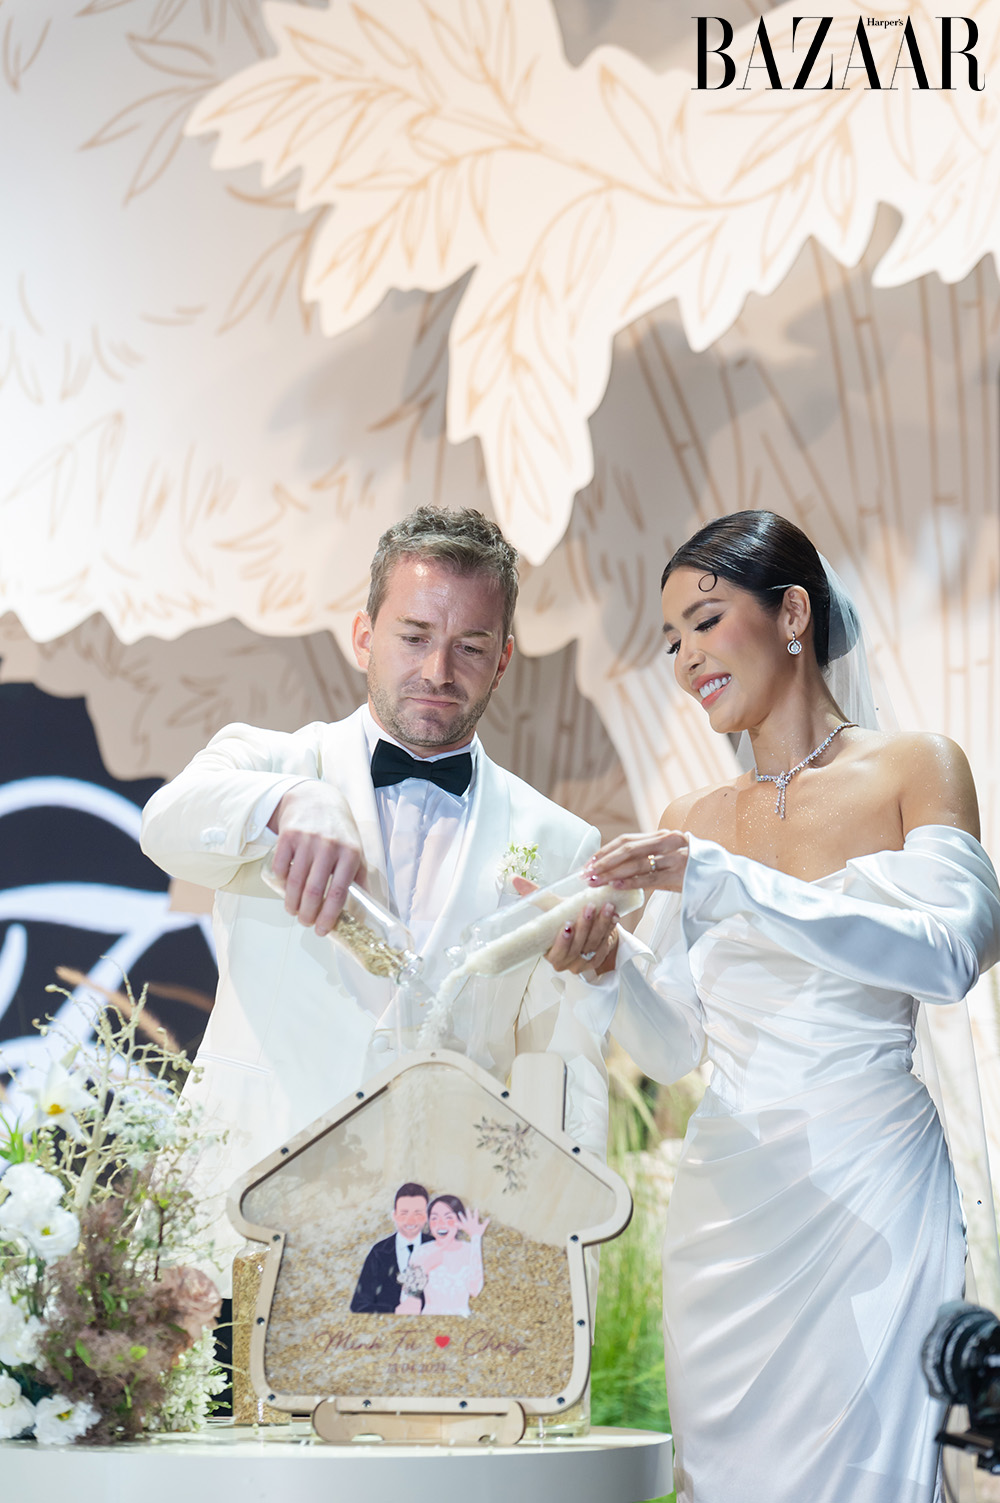 Toàn cảnh đám cưới Minh Tú: Cô dâu diện váy cưới "độc đáo" quẩy" nhiệt tình cùng bạn bè